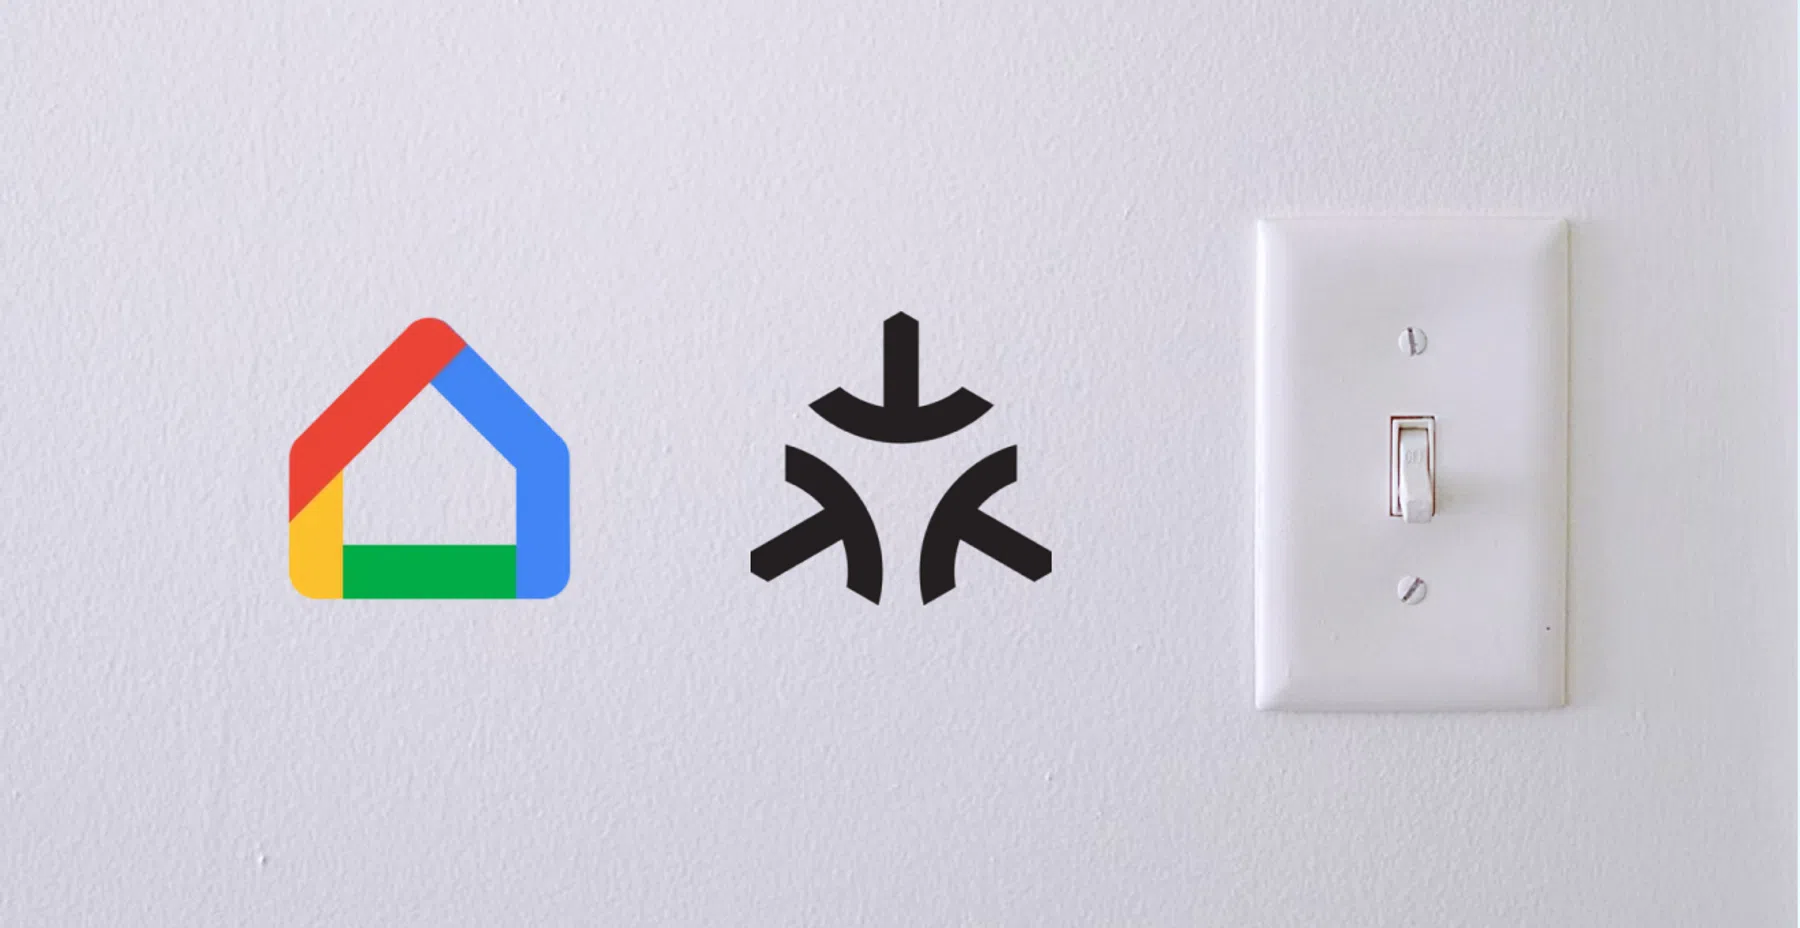 Google Home krijgt belangrijke verbetering en werkt straks ook zónder internet